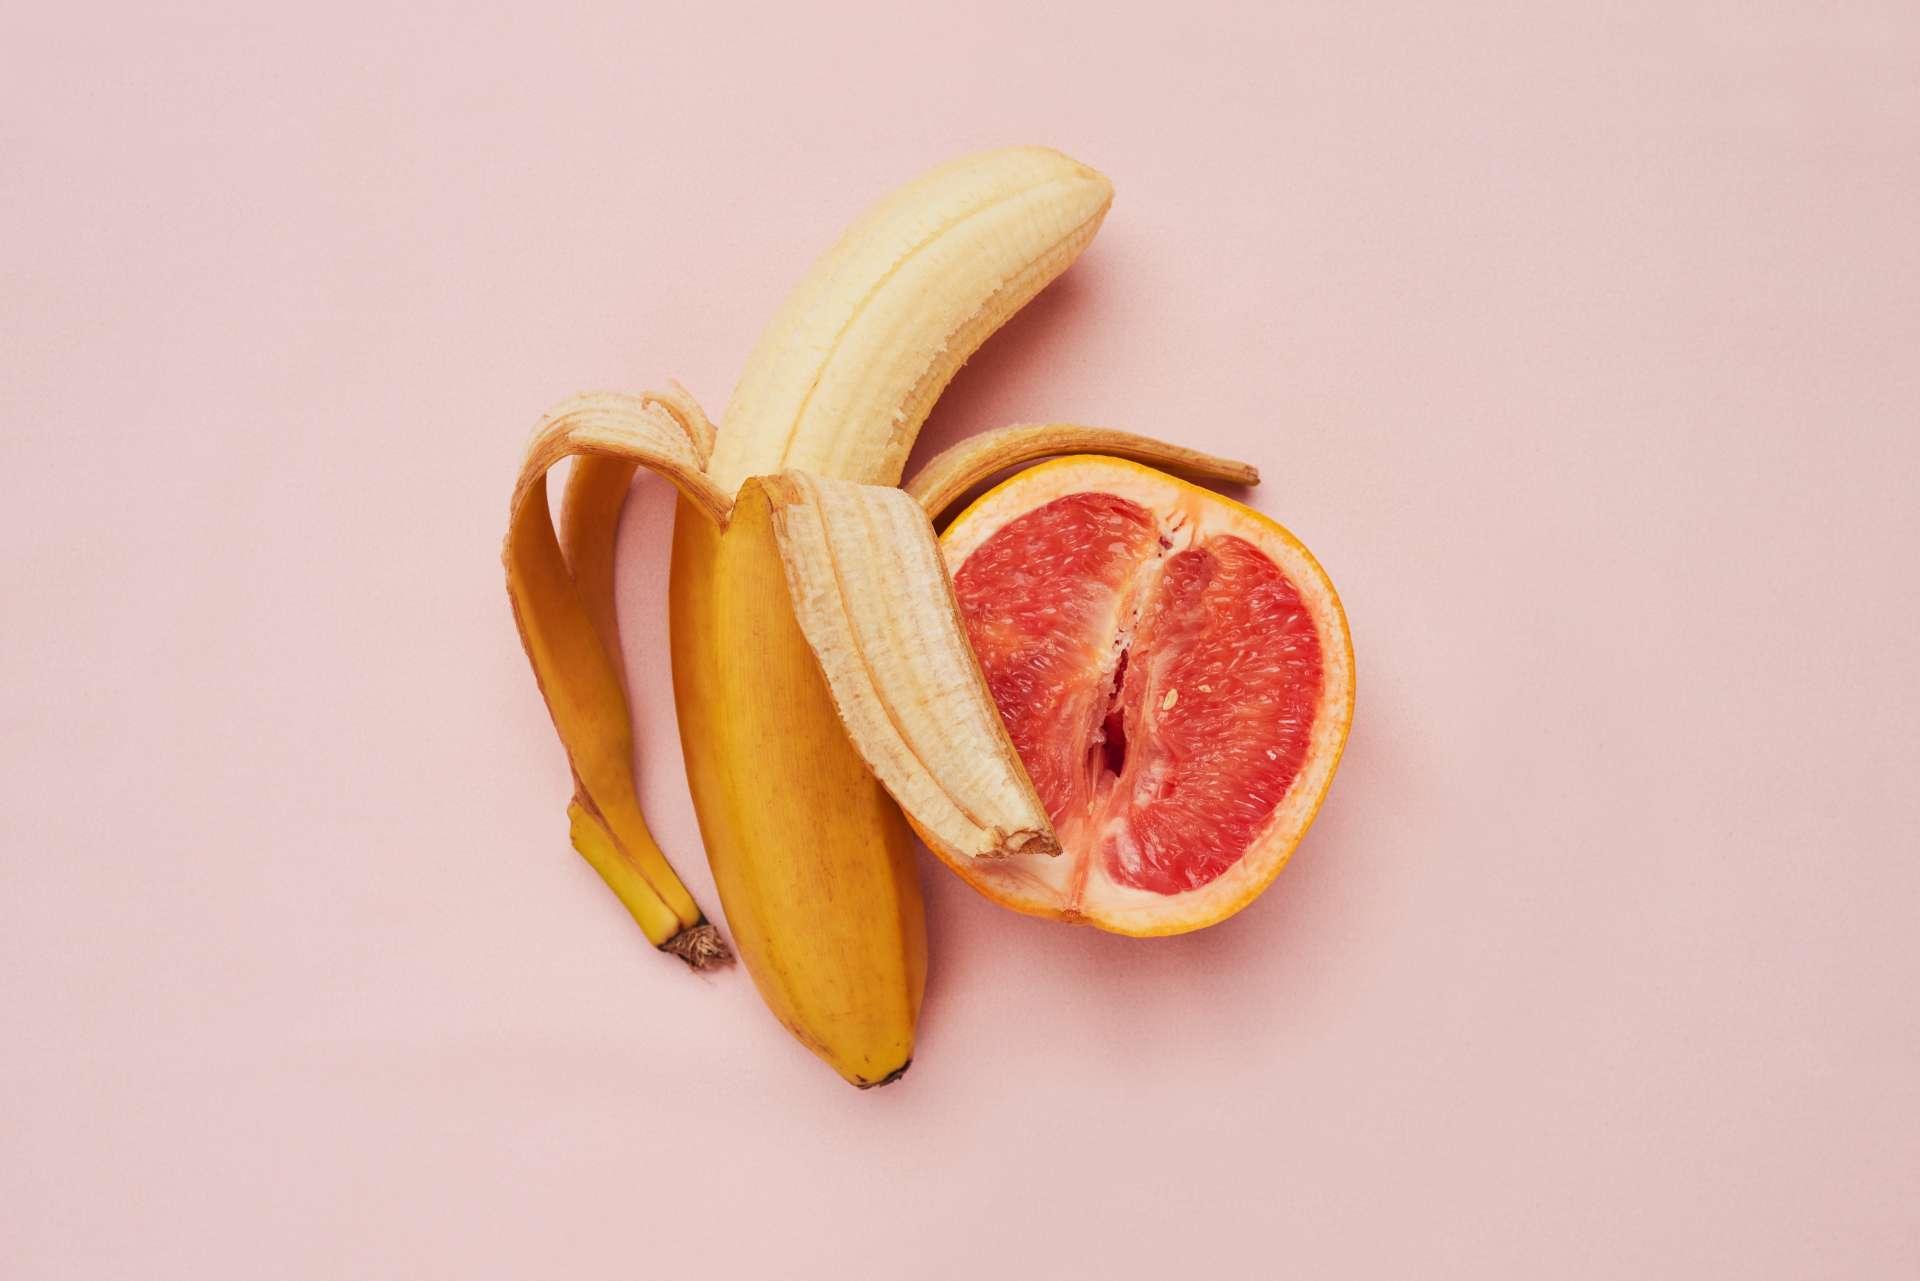 Studioaufnahme einer Banane und Grapefruit in einer suggestiven Position vor einem rosa Hintergrund